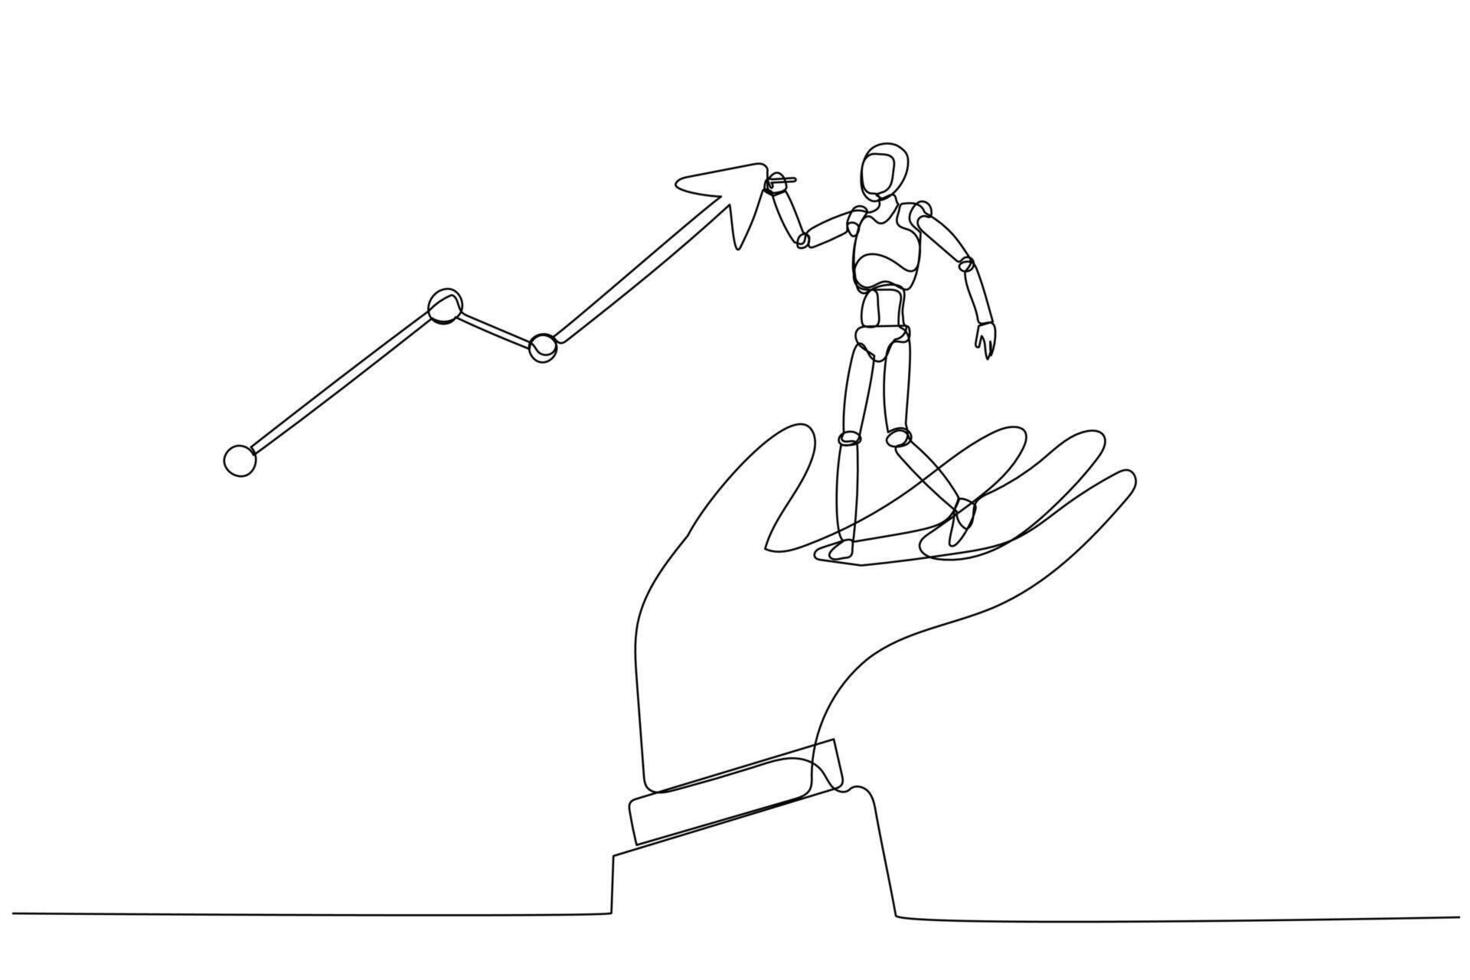 humanoid robot står på en mänsklig hand, pekande mot ett uppåt trender Graf linje. begrepp av synergi mellan mänsklig Stöd och robot effektivitet, ledande till tillväxt. vektor